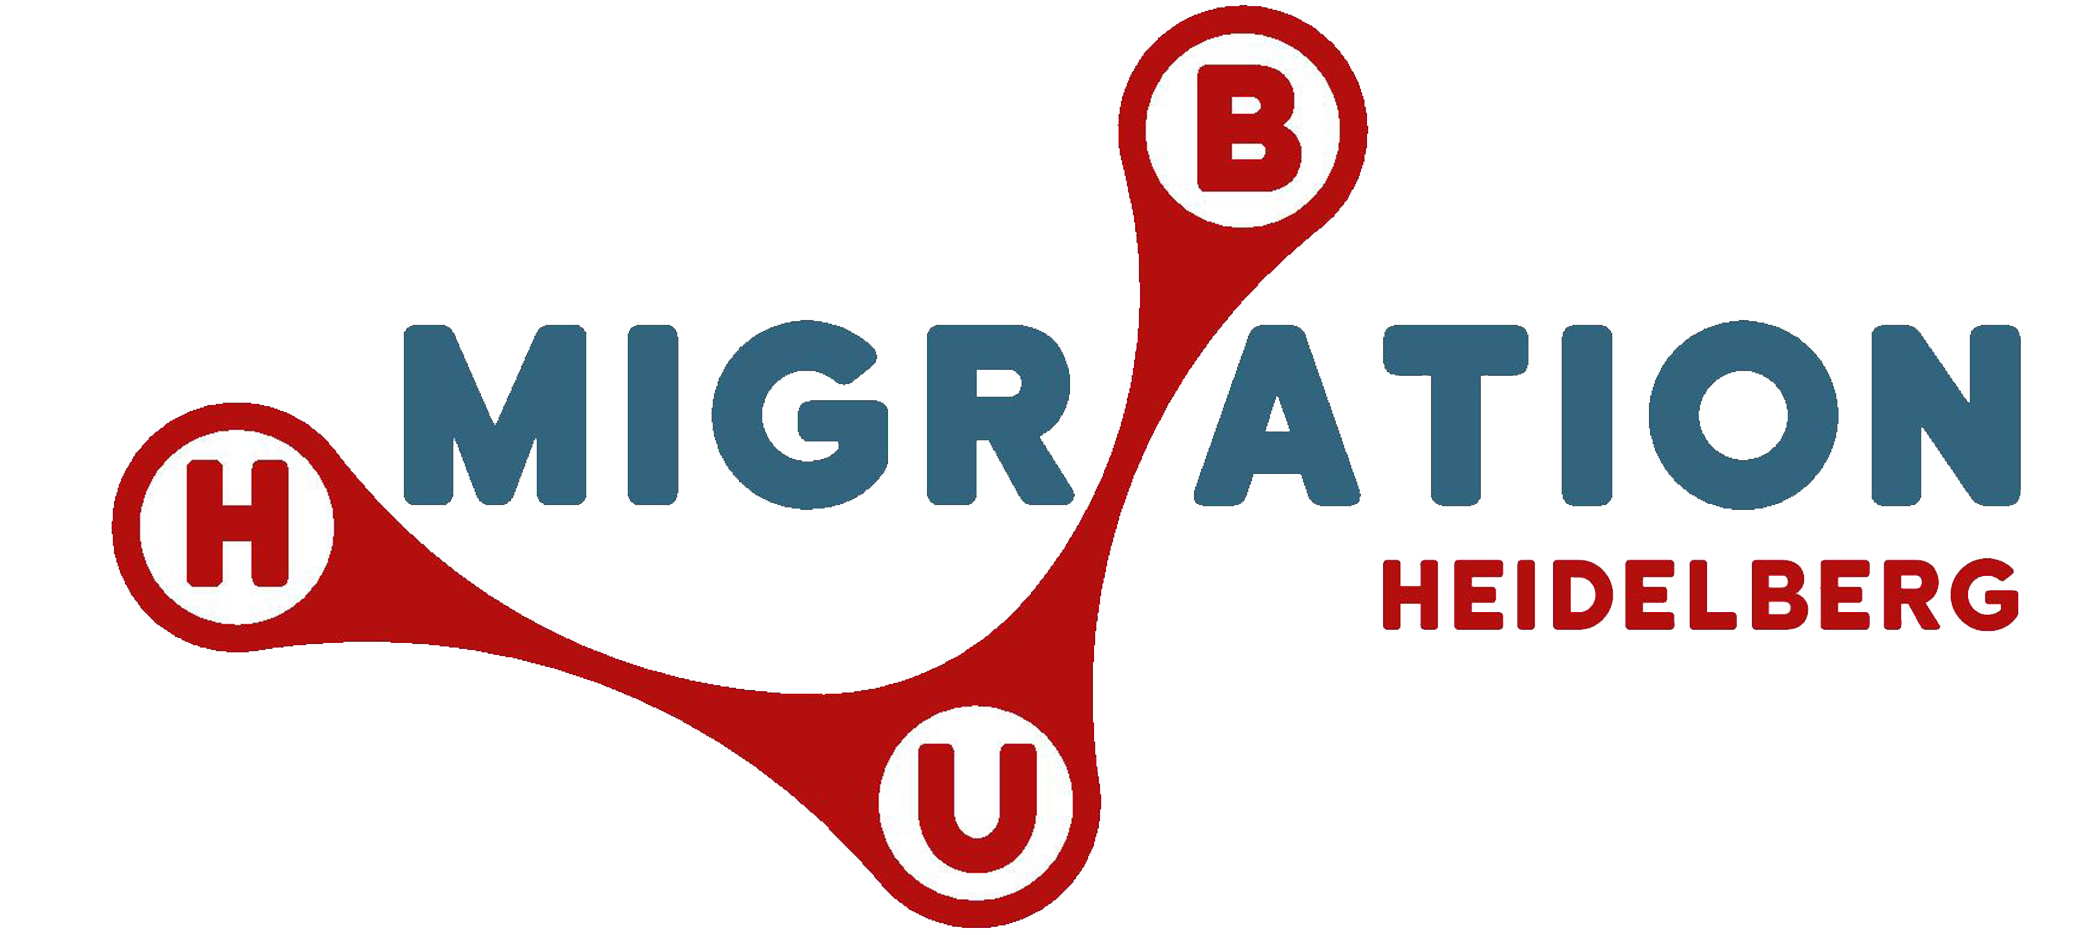 Migration Hub Heidelberg logo